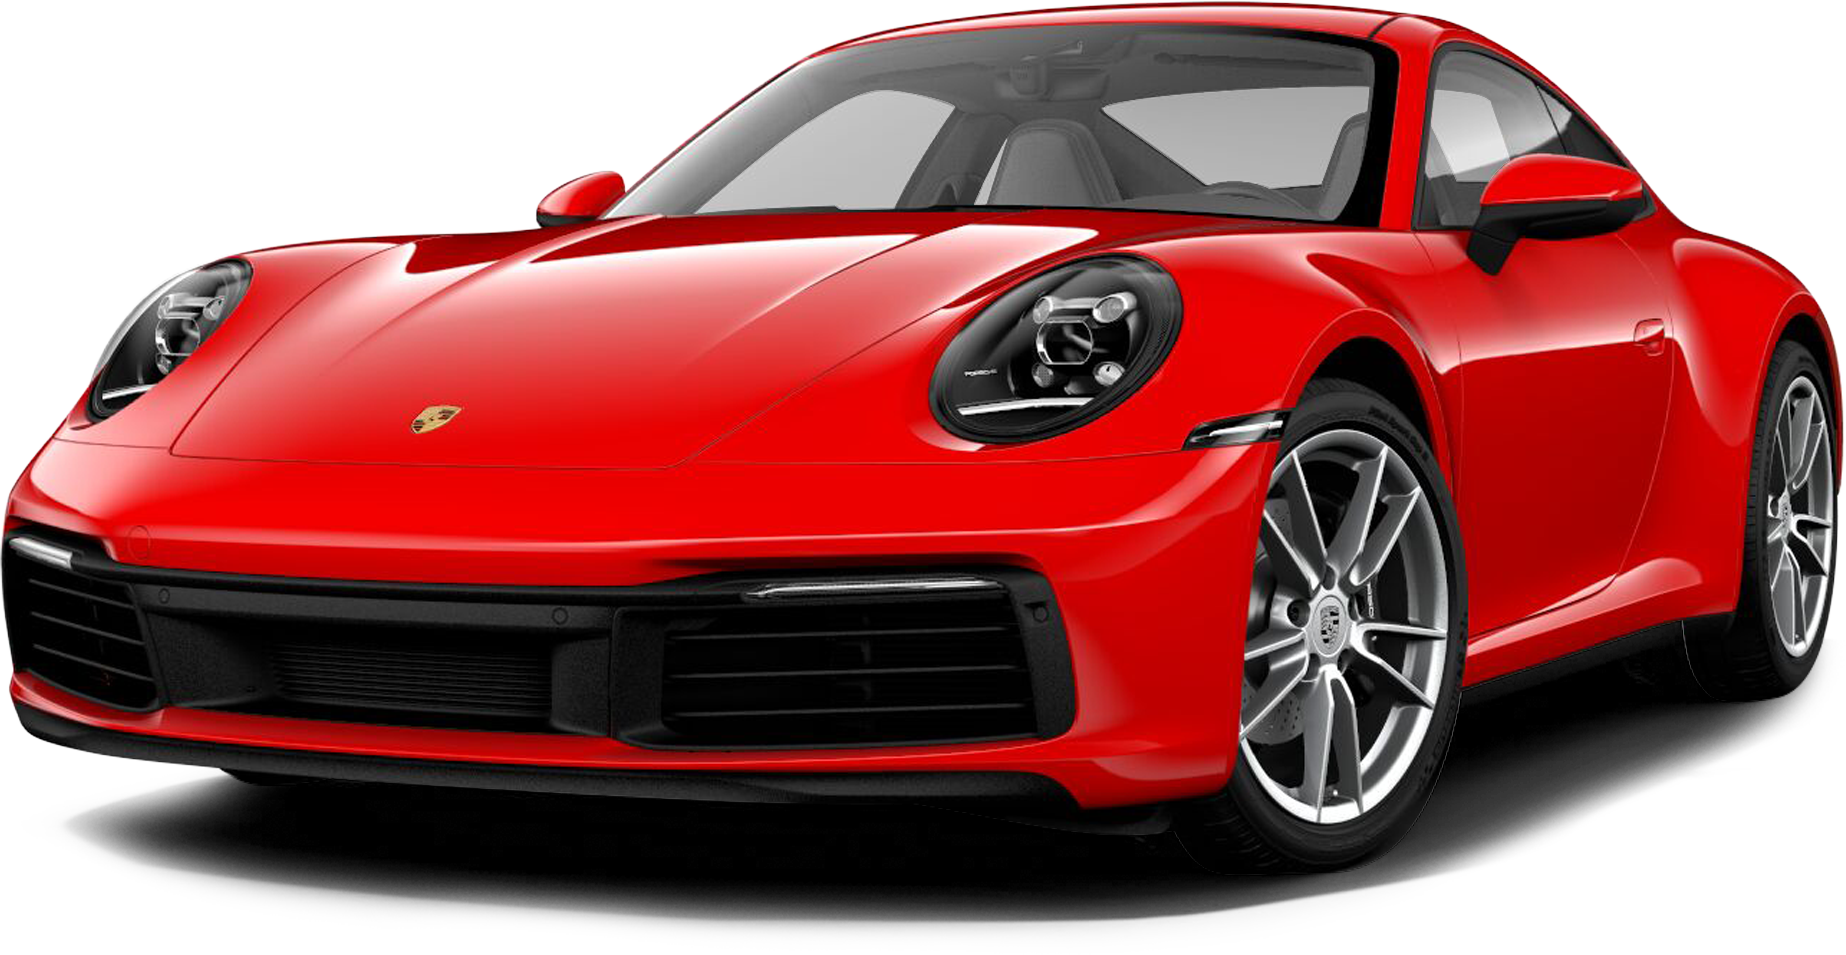 Người yêu tin đồn 1997 của streamer Linh Ngọc Đàm sắm Porsche 911 với option bạc tỷ, tiết lộ chờ hơn nửa năm mùa dịch mới có xe - Ảnh 3.